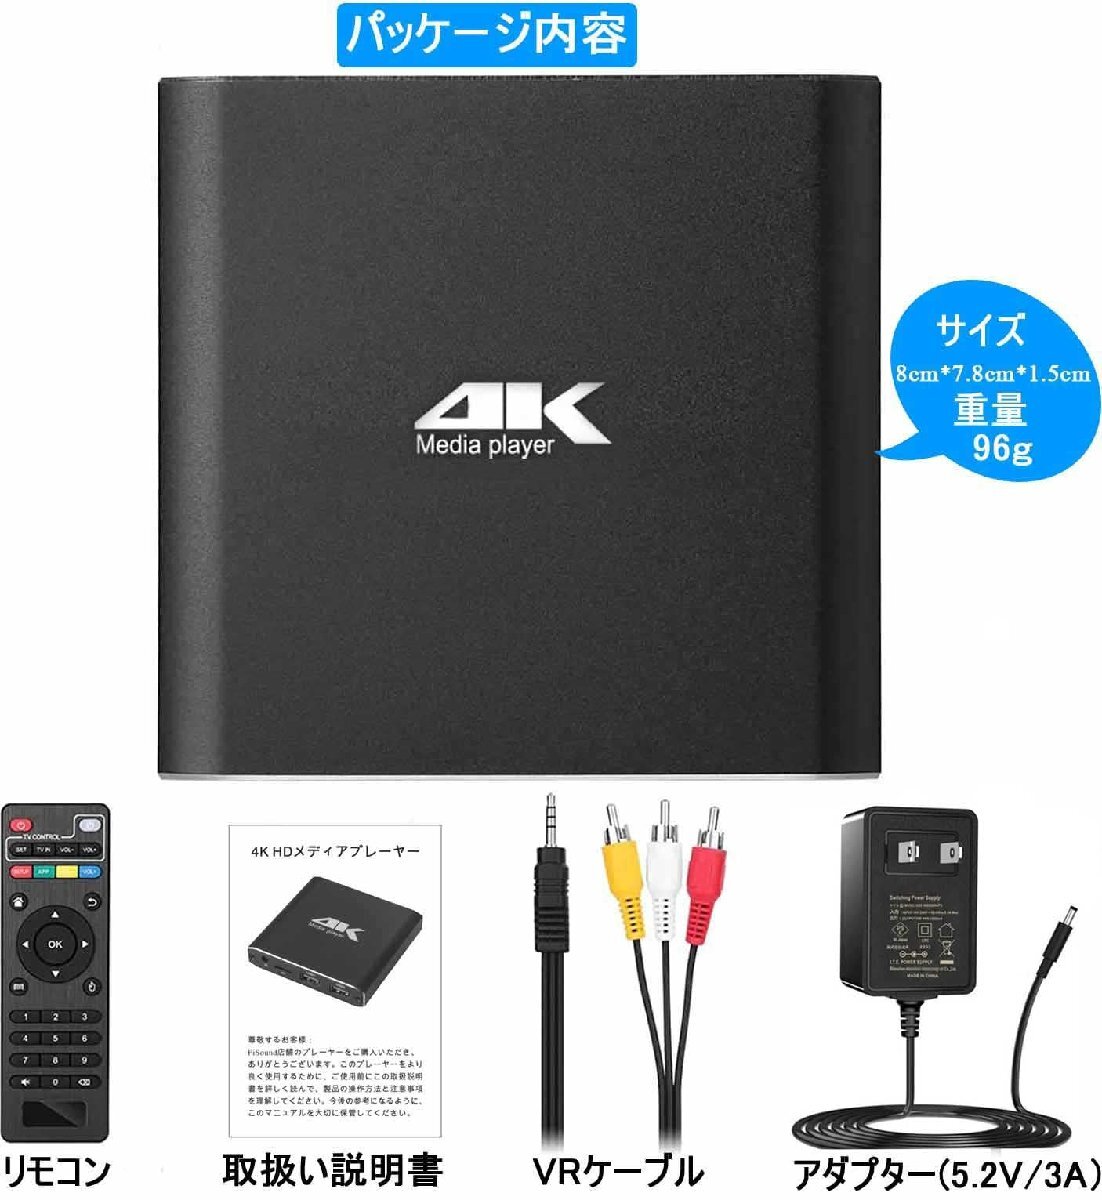 メディアプレーヤー4K マルチメディアプレイヤー HDDメディアプレイヤー解像度最大4096 *2160p 60fps フルHD1080p対応 4G_画像8